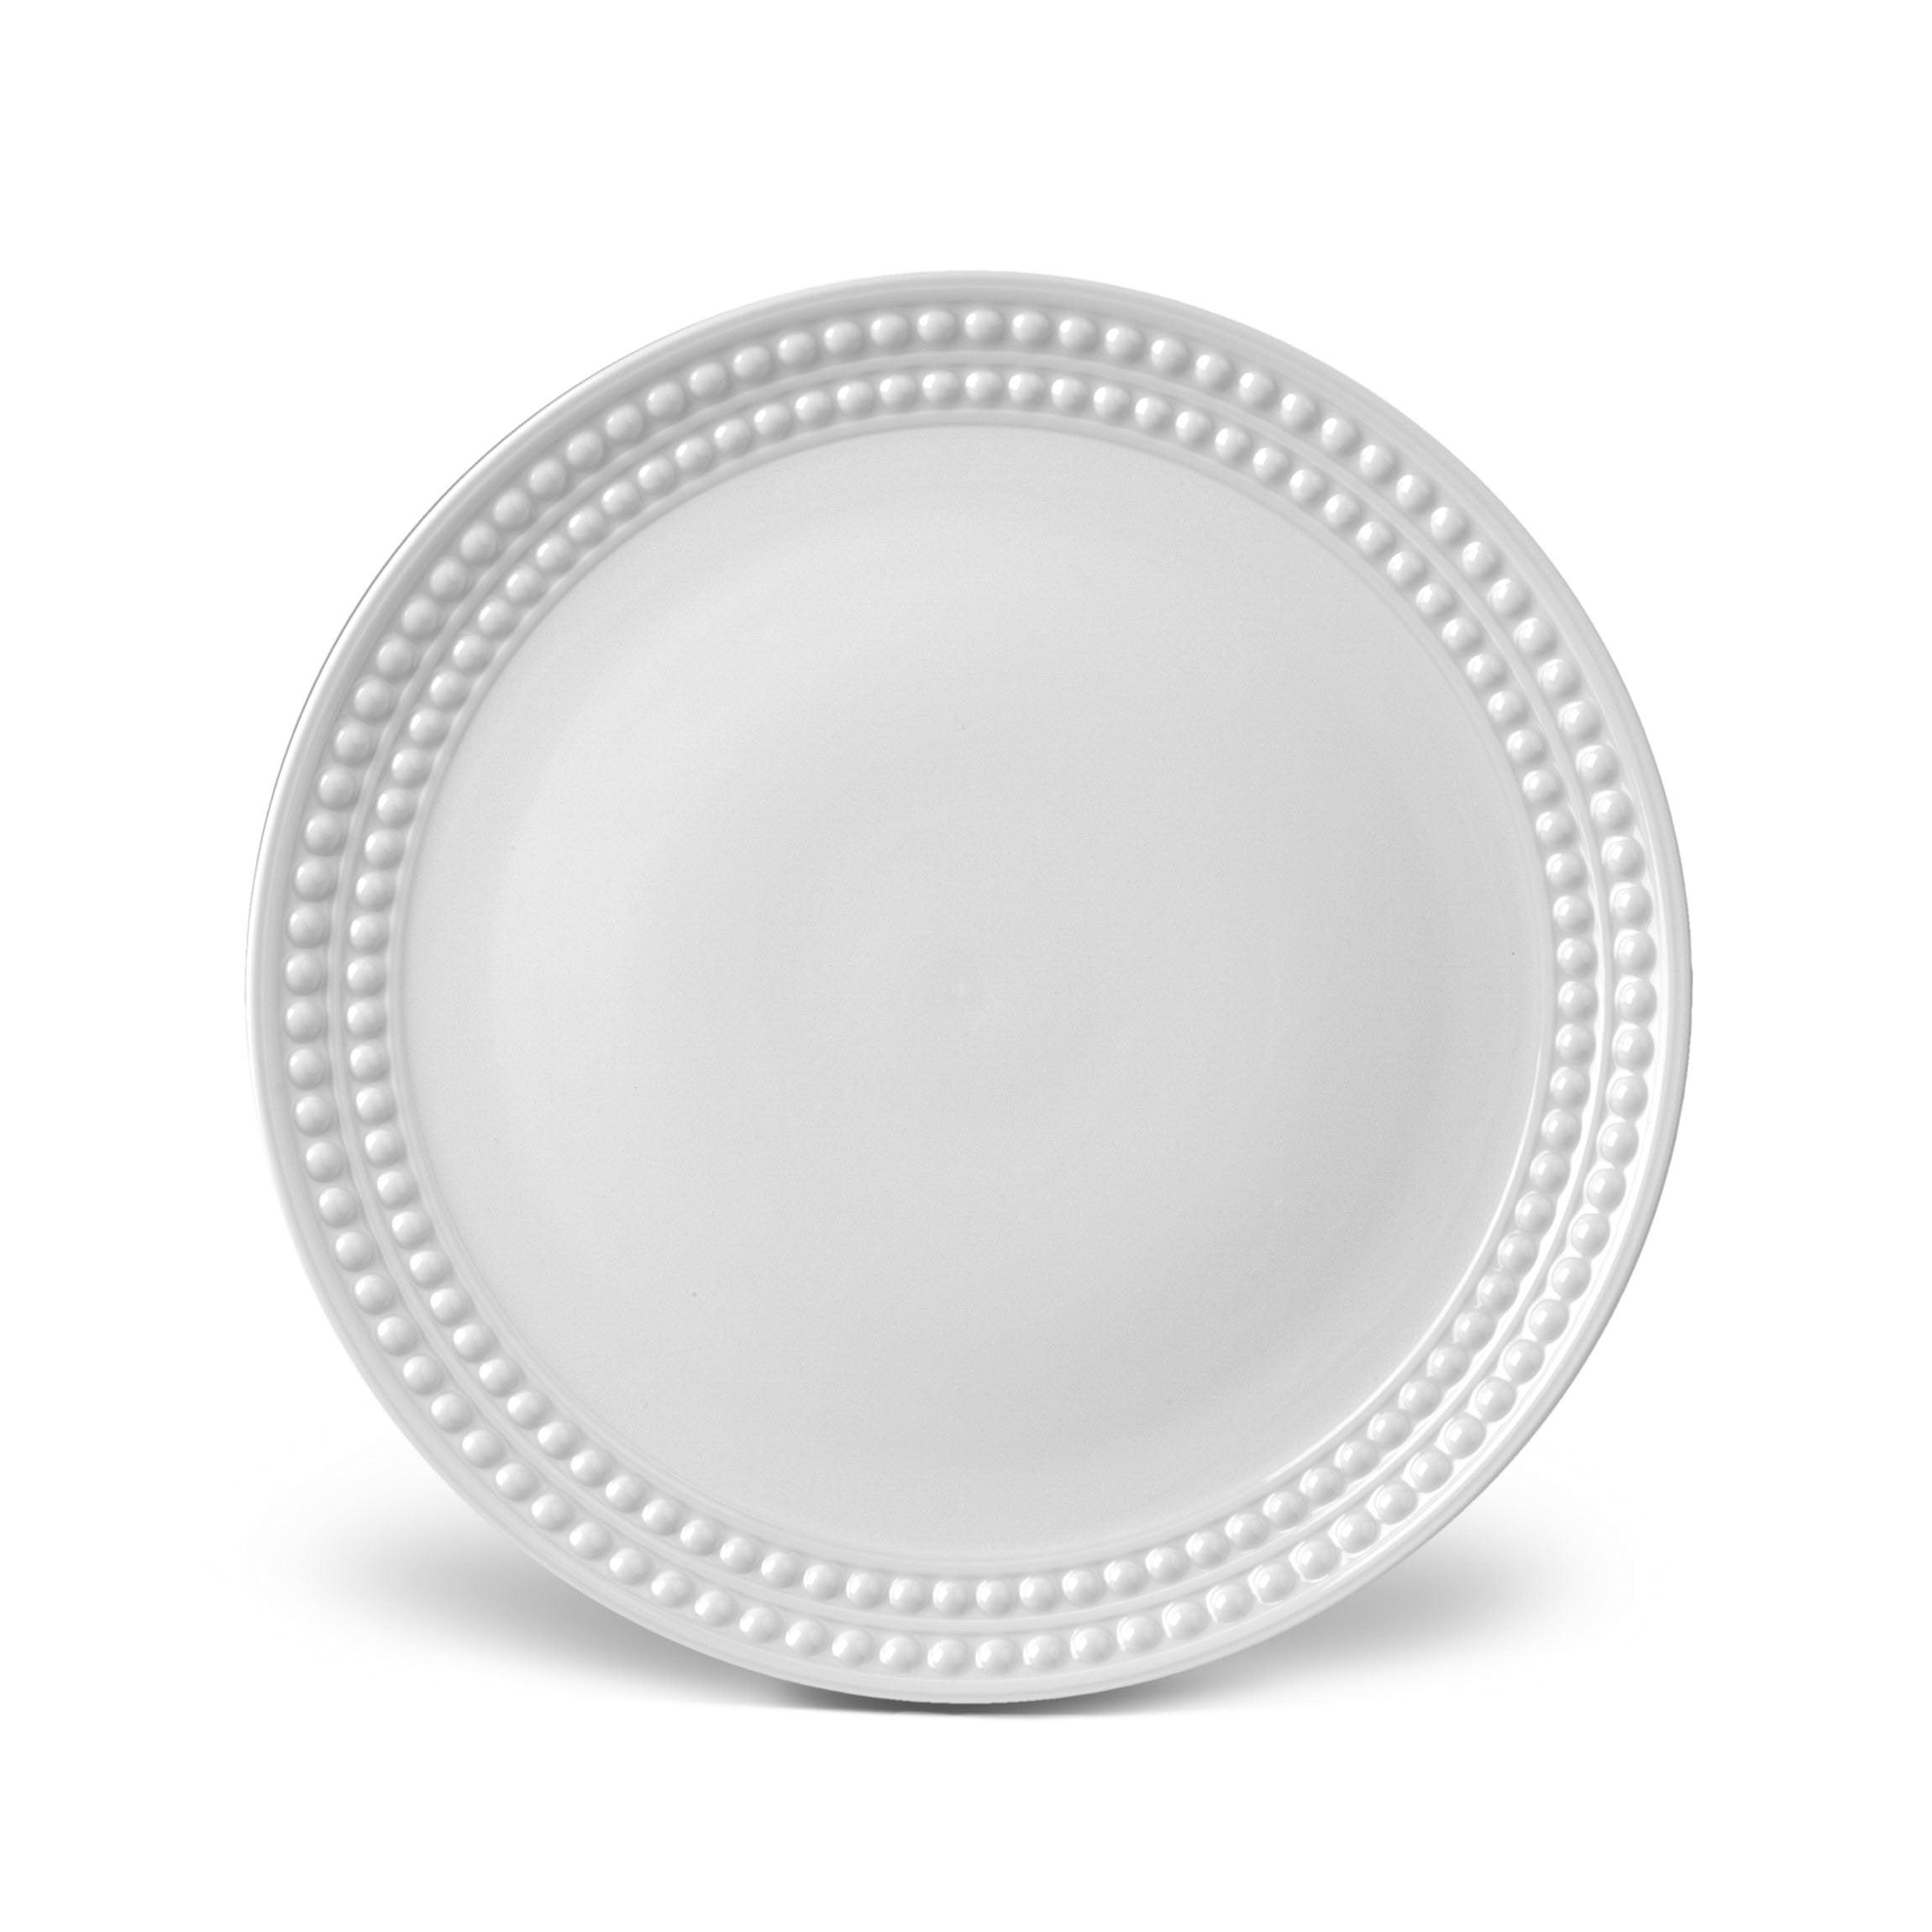 Fine Dining & Living - Assiette plate 17cm white Perla